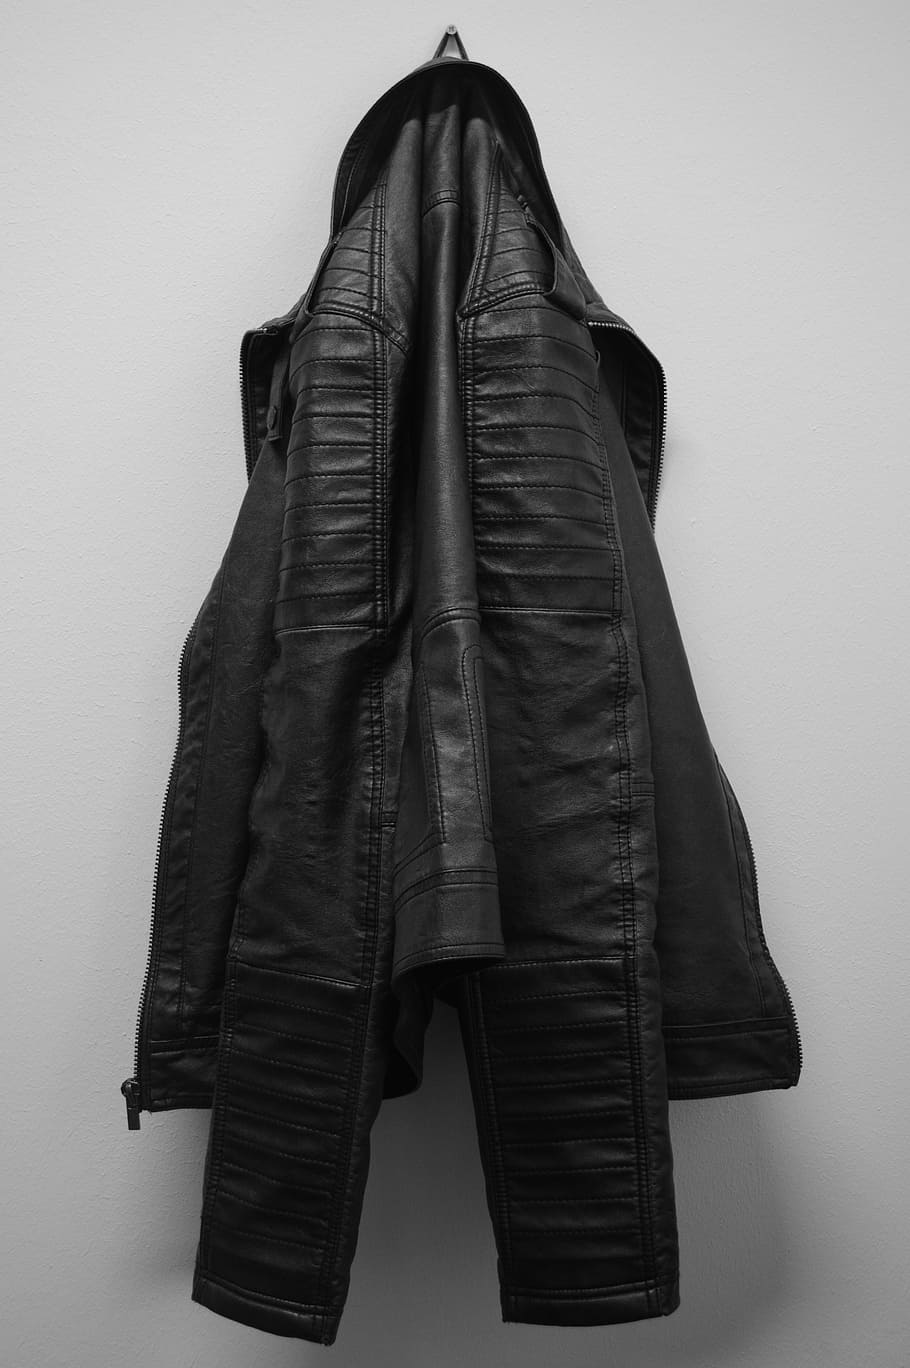 negro, chaqueta de cuero, colgante, blanco, pared, chaqueta, abrigo de cuero, ropa, percha, negro blanco